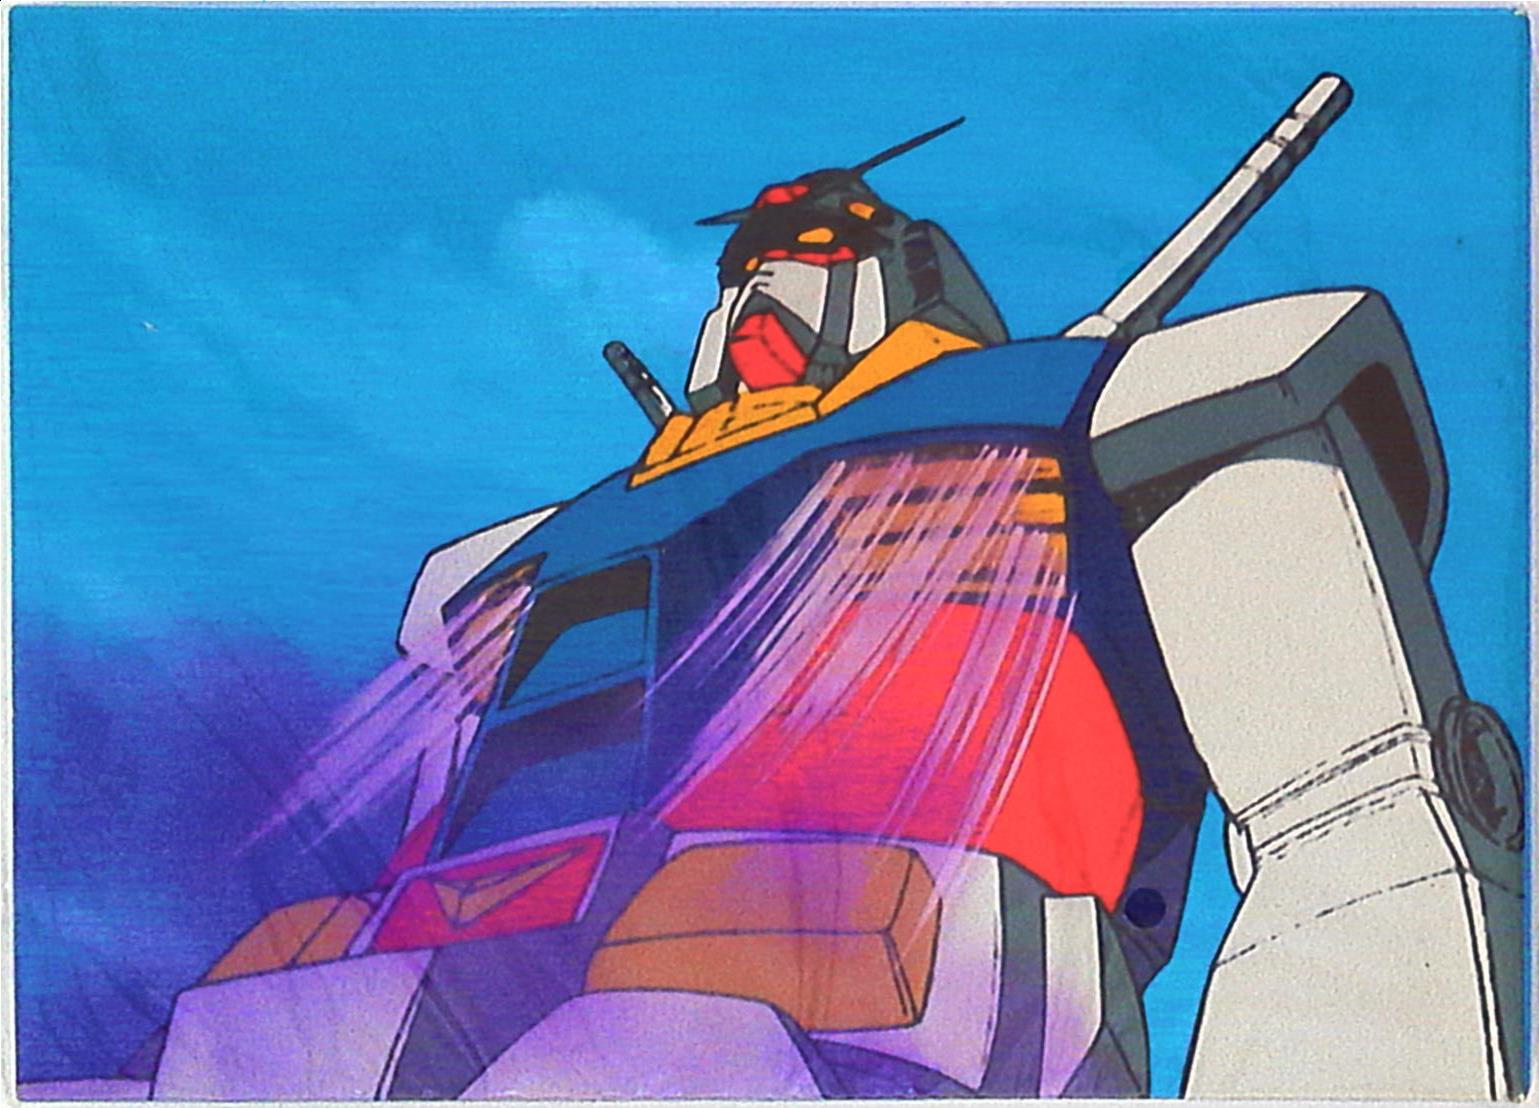 朝日新聞社 機動戦士ガンダム展図録 The Art Of Gundam まんだらけ Mandarake